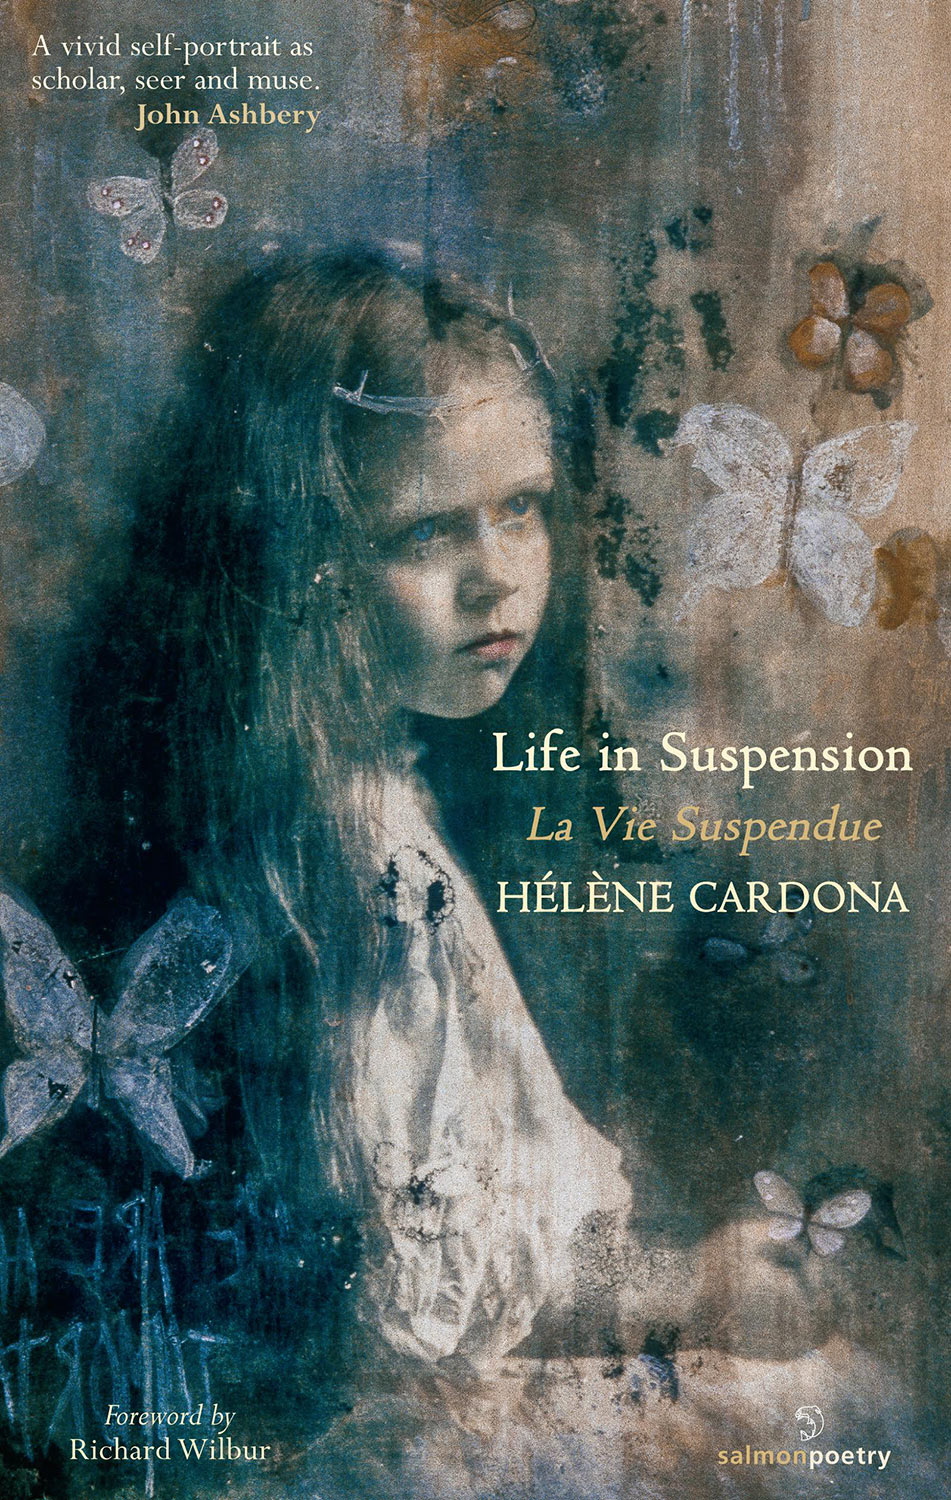 Life in Suspension/La Vie Suspendue — The Creative Process